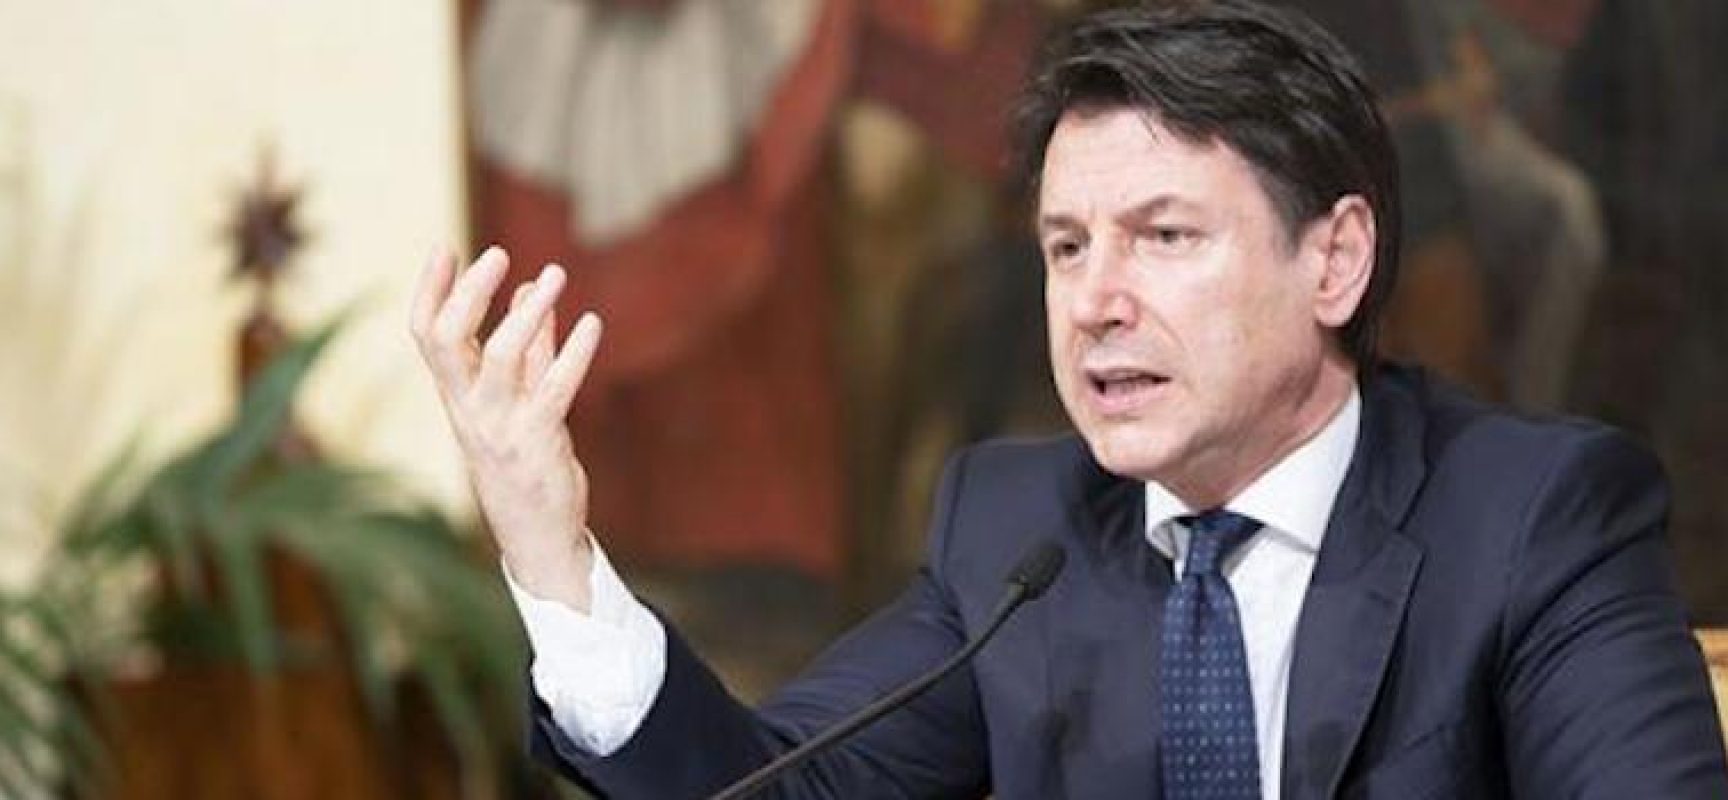 Coronavirus, Giuseppe Conte annuncia: “400 miliardi per la liquidità delle aziende”